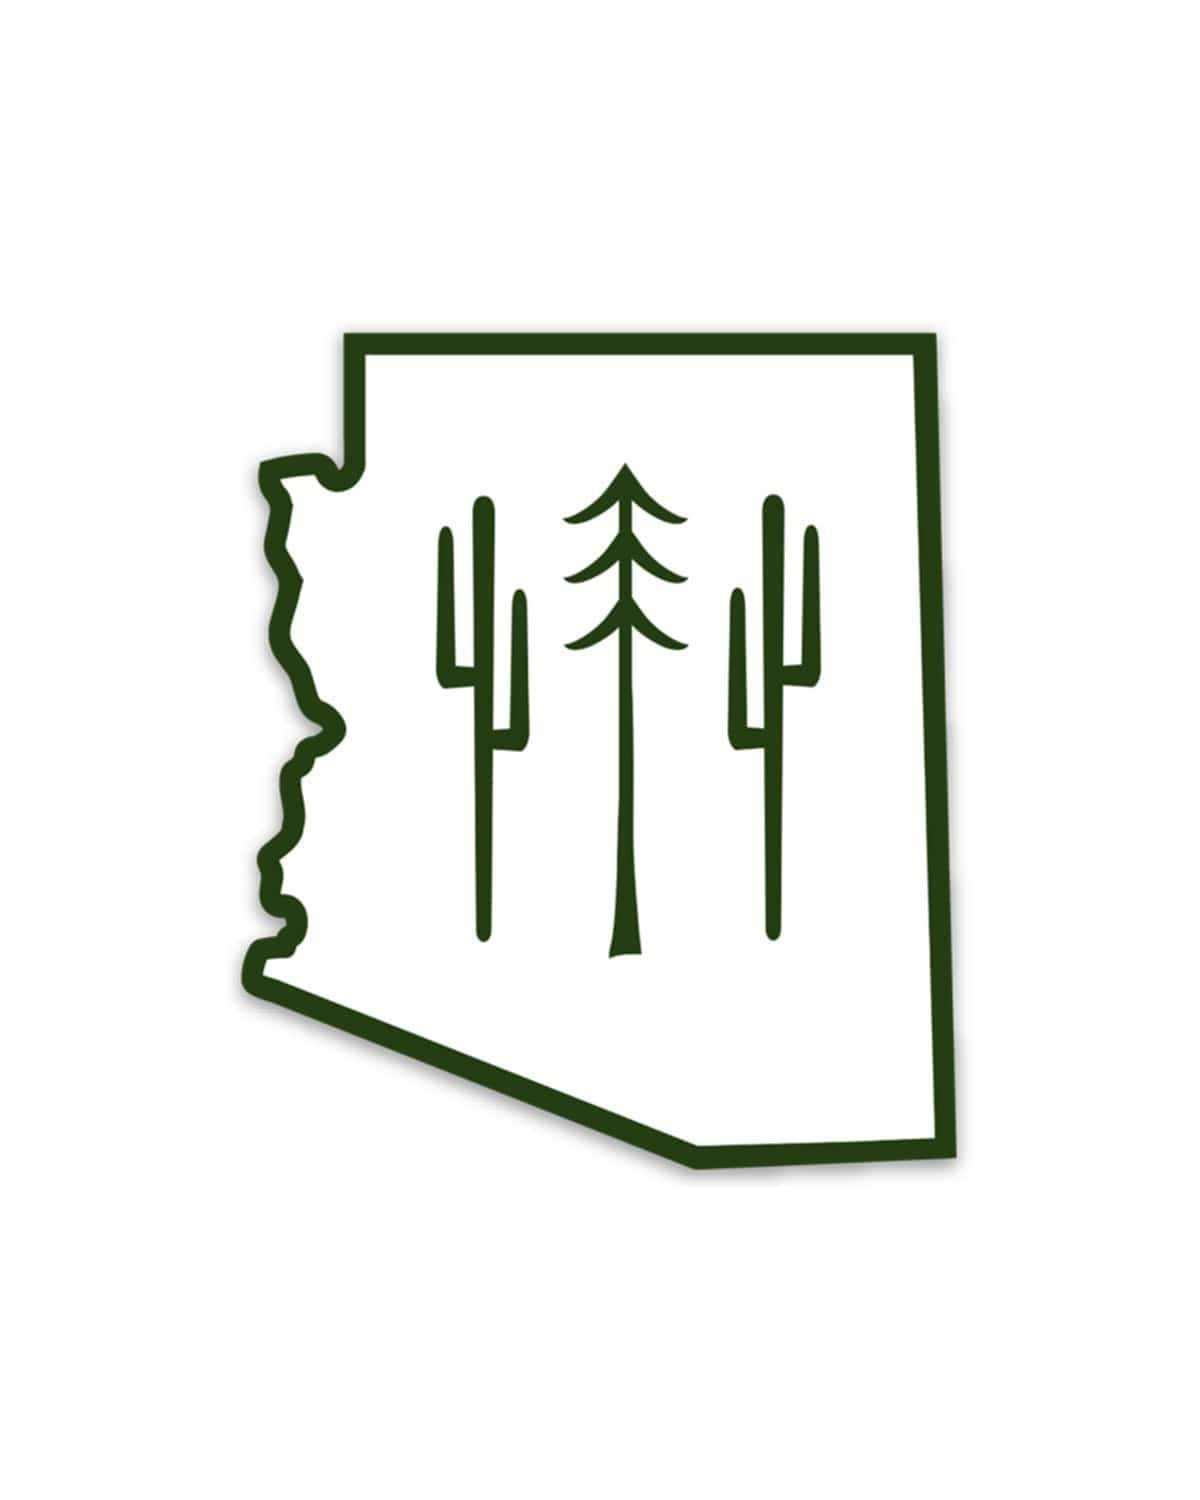 Arizona Wilderness | Sticker - Keep Nature Wild